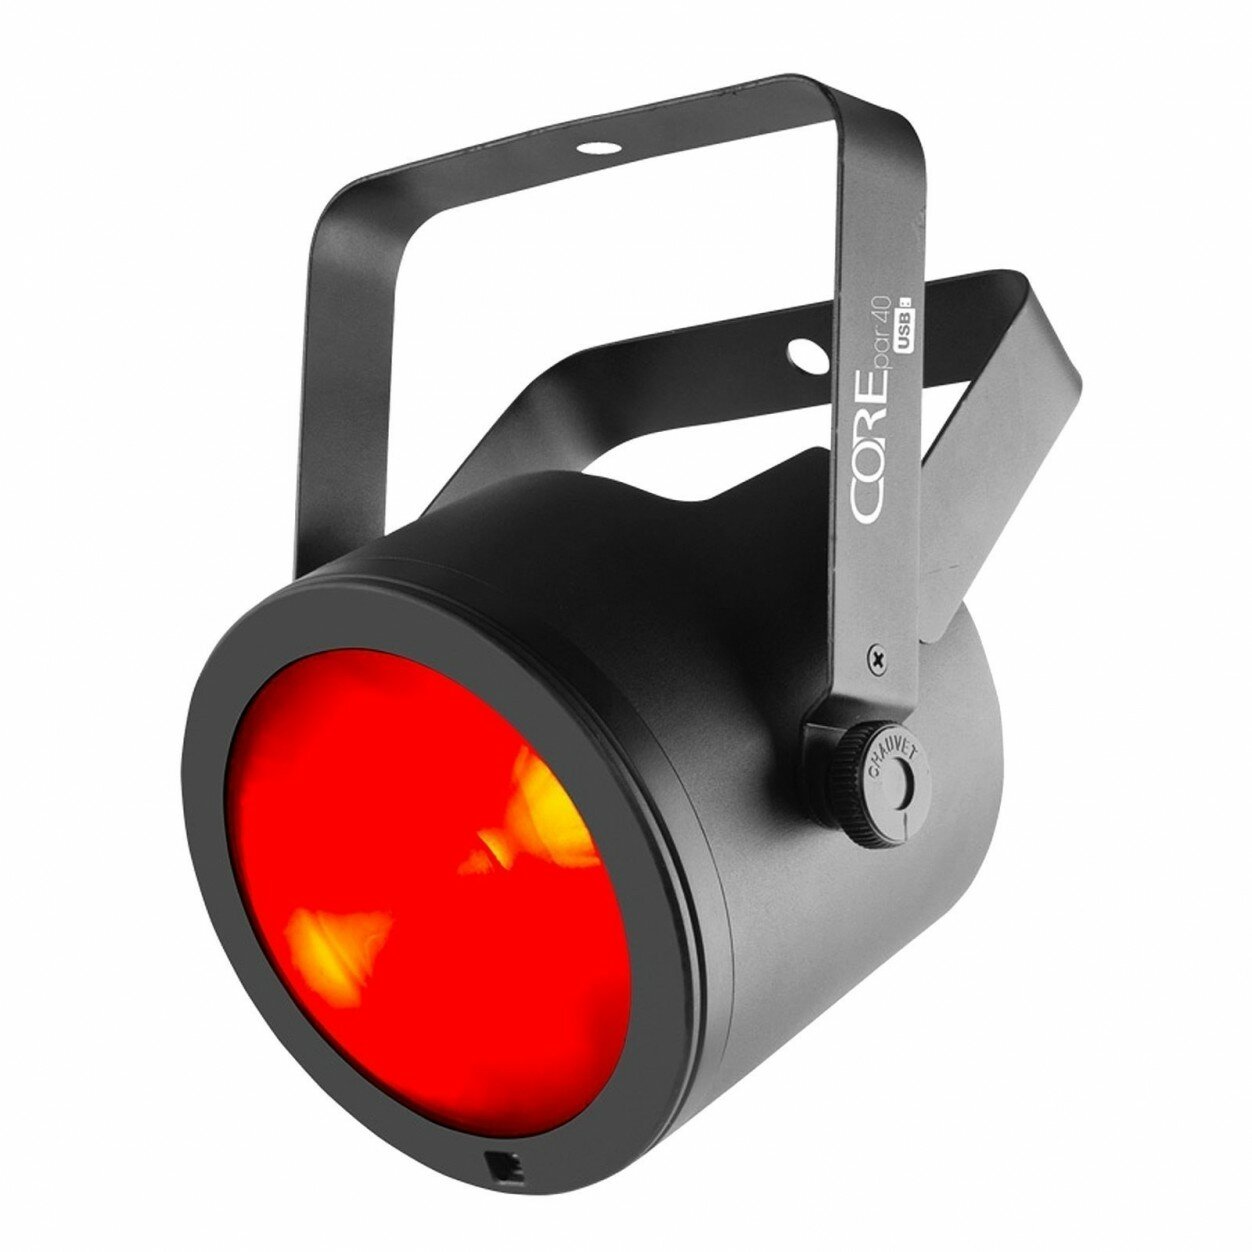 Chauvet-DJ CorePAR 40 USB светодиодный прожектор направленного света на 40Вт RGB COB светодиоде